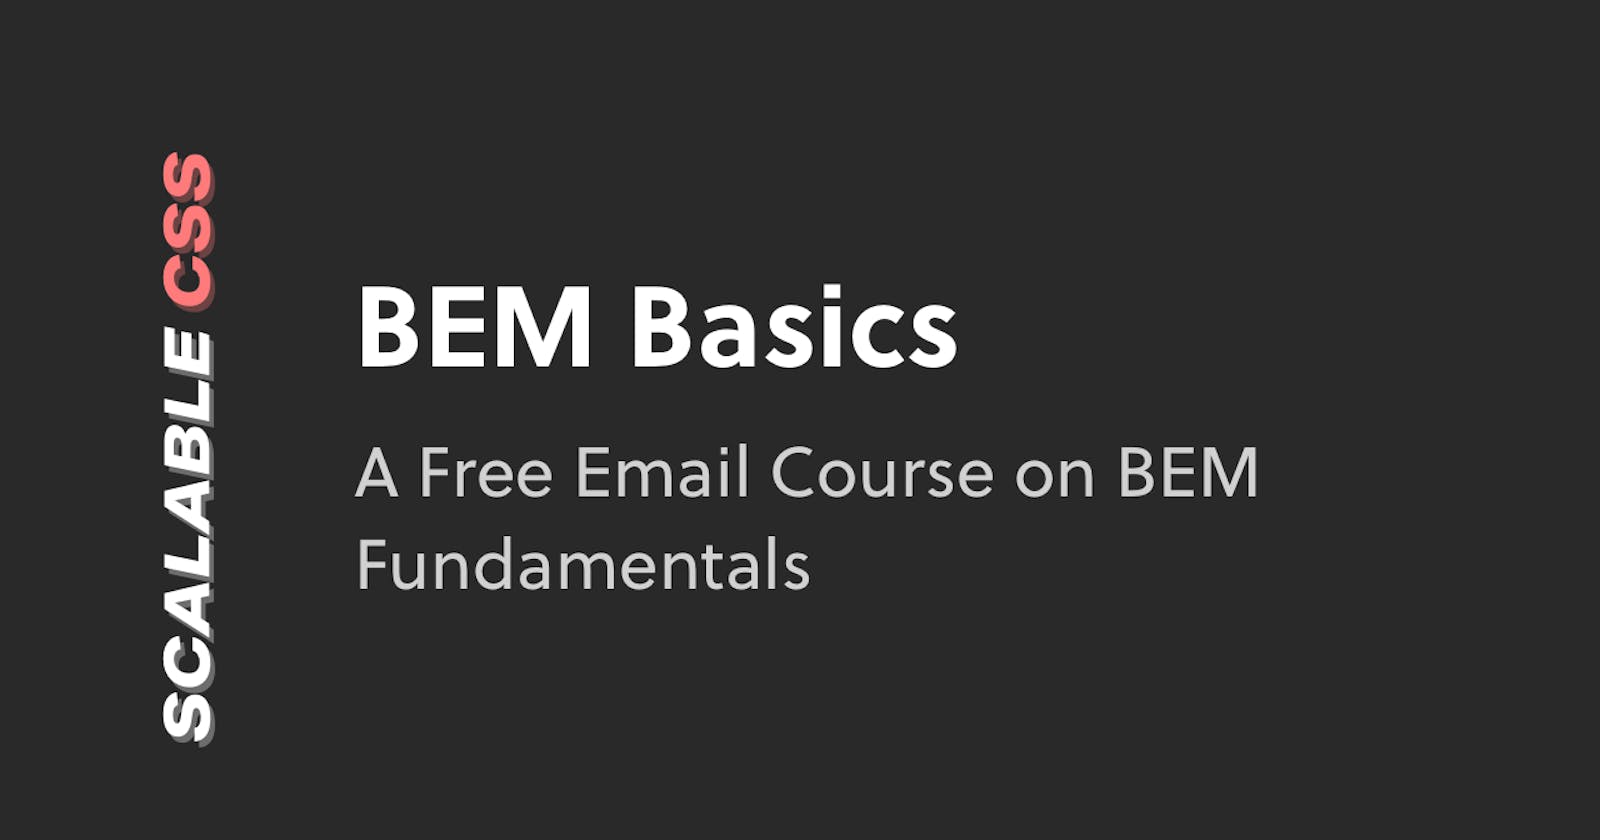 Launching BEM Basics: A Free Email Course on BEM